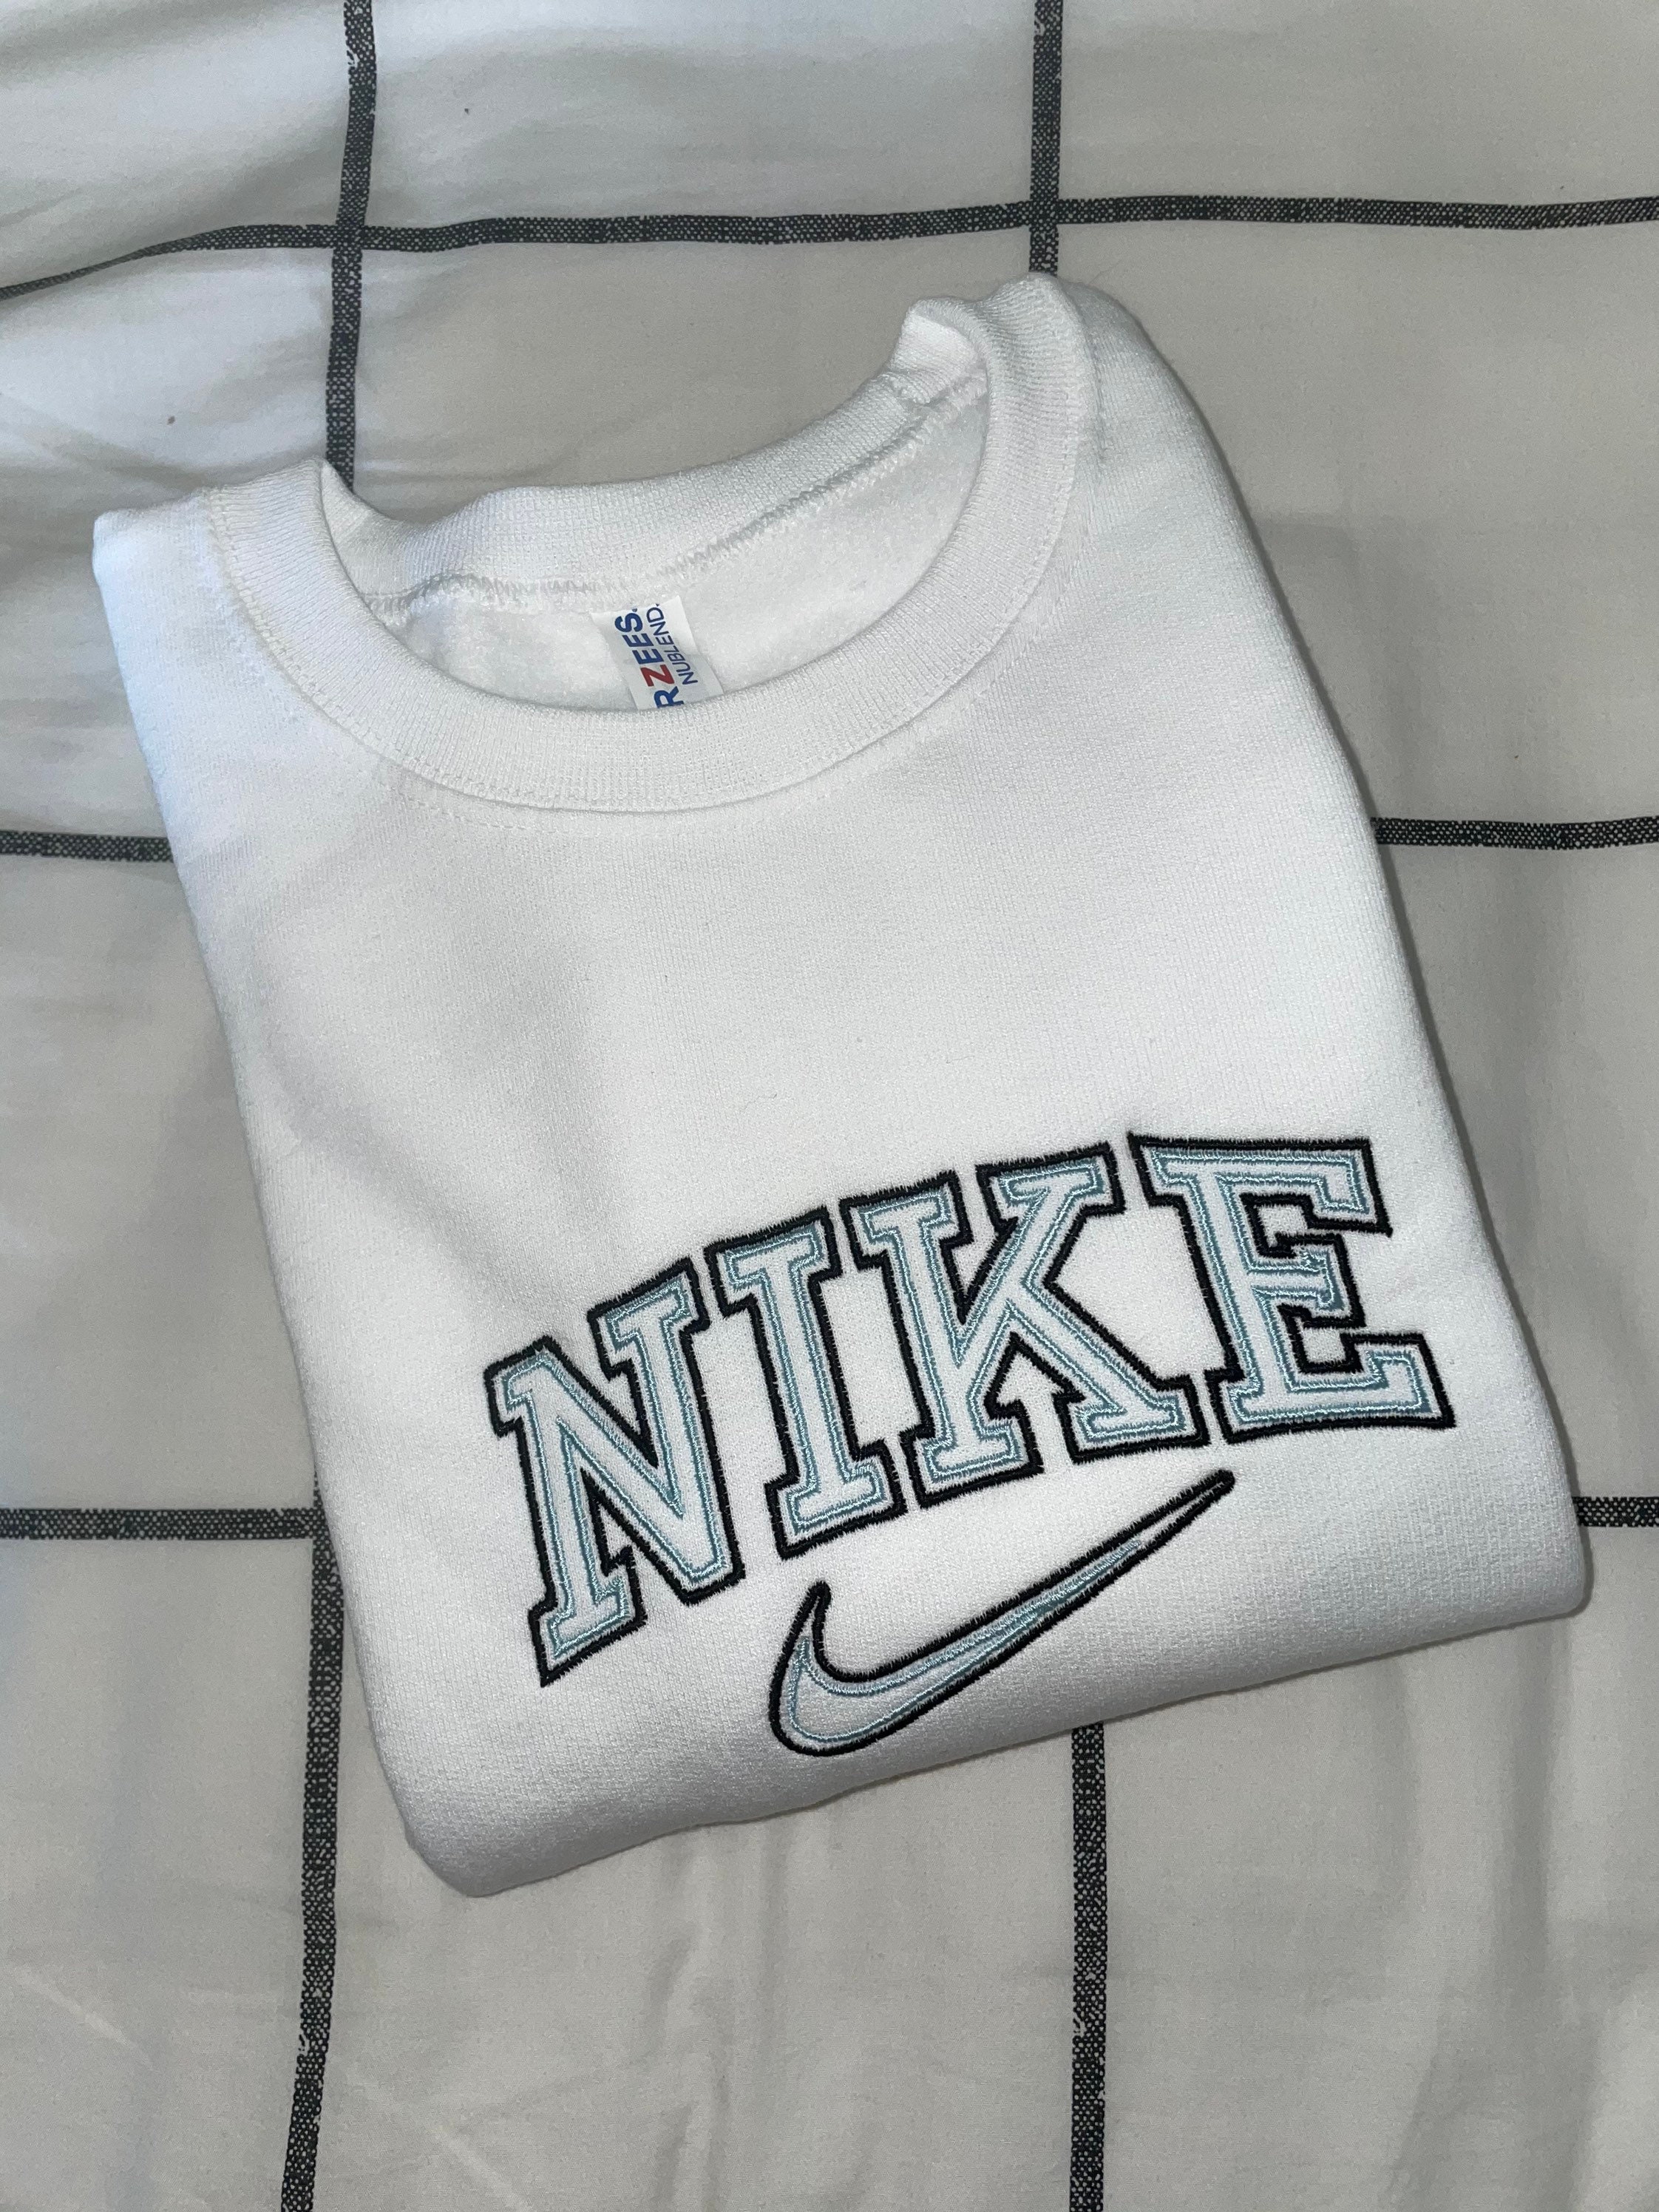 Nike Embroidered Crewneck Sweatshirt Custom | Etsy